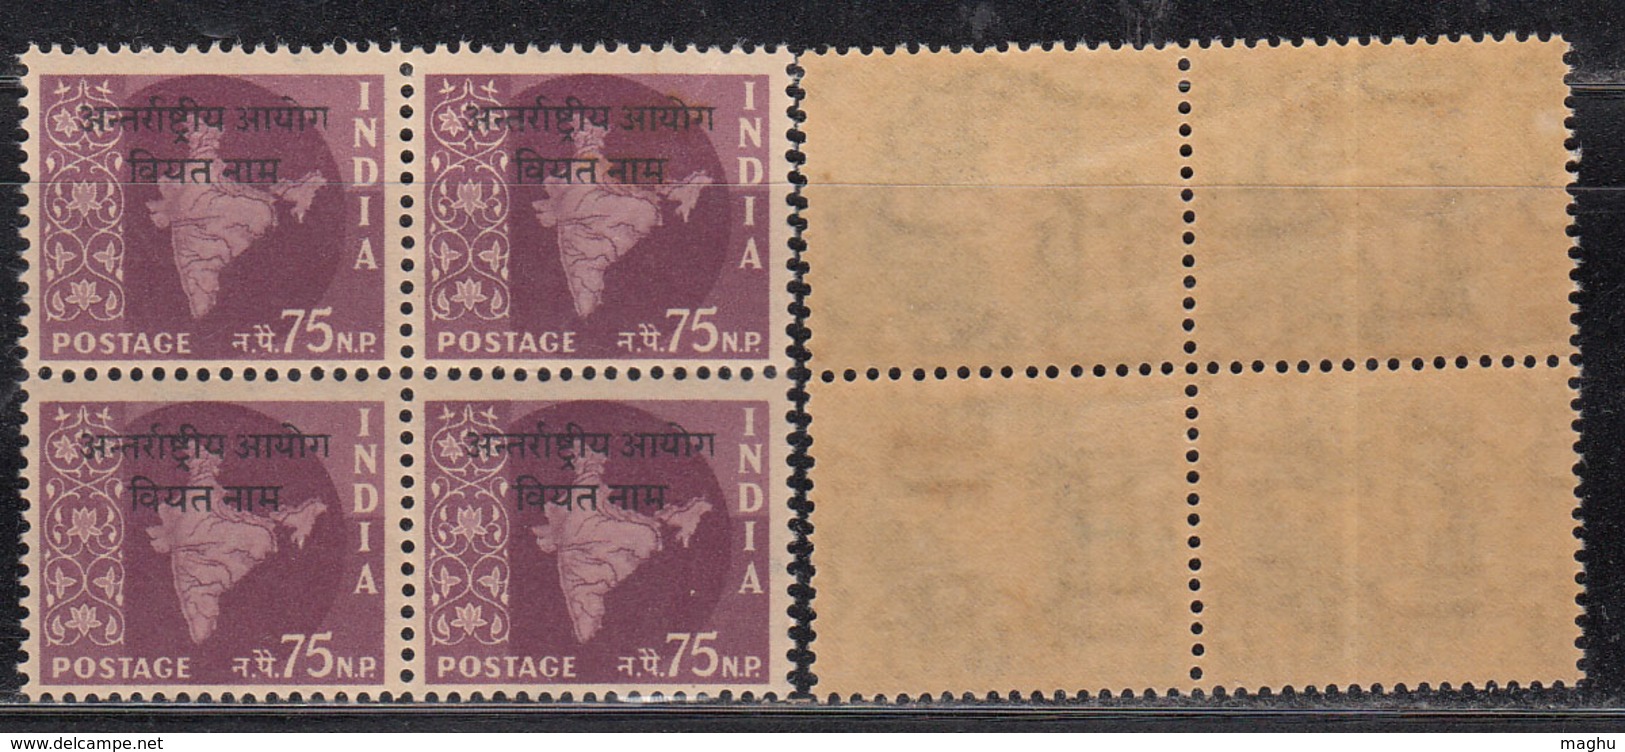 Block Of 4, 75np Ovpt Vietnam On Map Series,  India MNH 1962, Ashokan Watermark, - Militaire Vrijstelling Van Portkosten